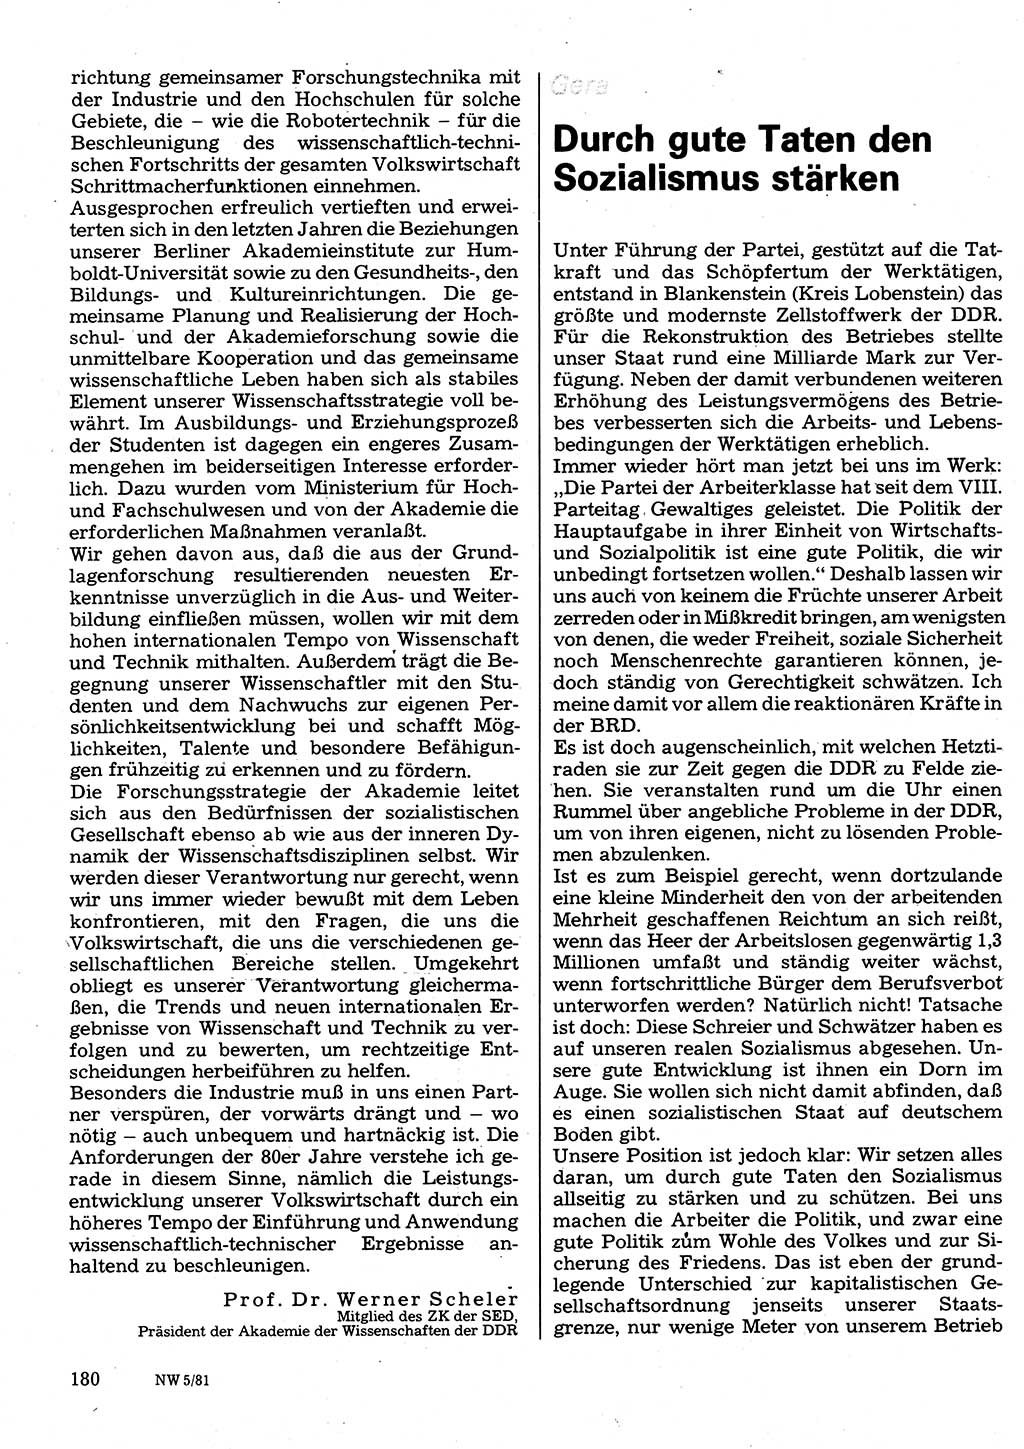 Neuer Weg (NW), Organ des Zentralkomitees (ZK) der SED (Sozialistische Einheitspartei Deutschlands) für Fragen des Parteilebens, 36. Jahrgang [Deutsche Demokratische Republik (DDR)] 1981, Seite 180 (NW ZK SED DDR 1981, S. 180)